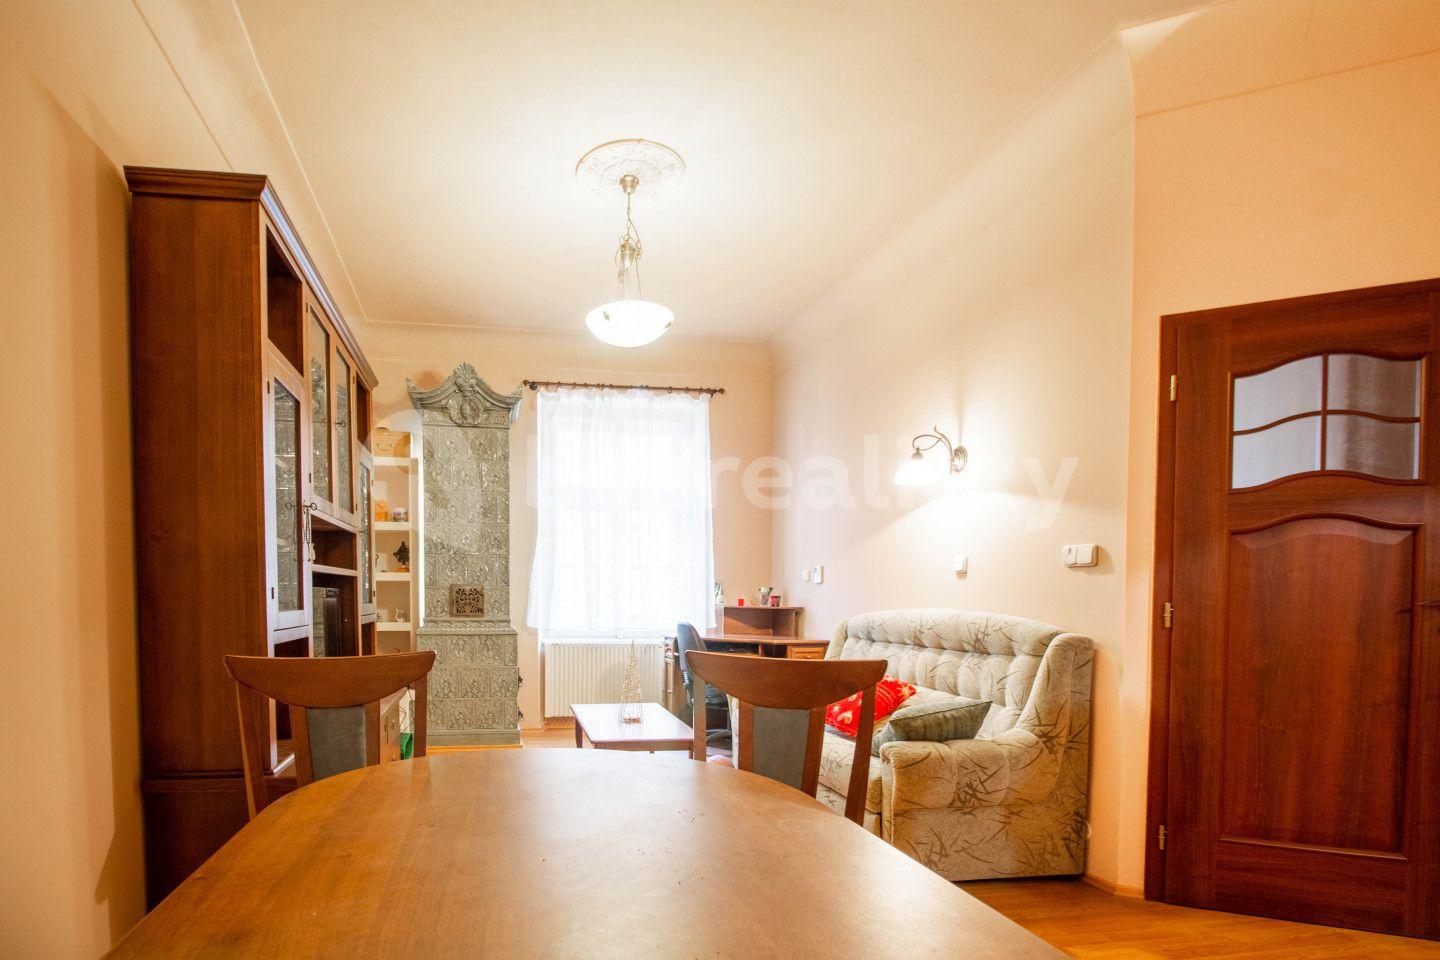 1 bedroom with open-plan kitchen flat for sale, 44 m², Betlémské náměstí, Prague, Prague